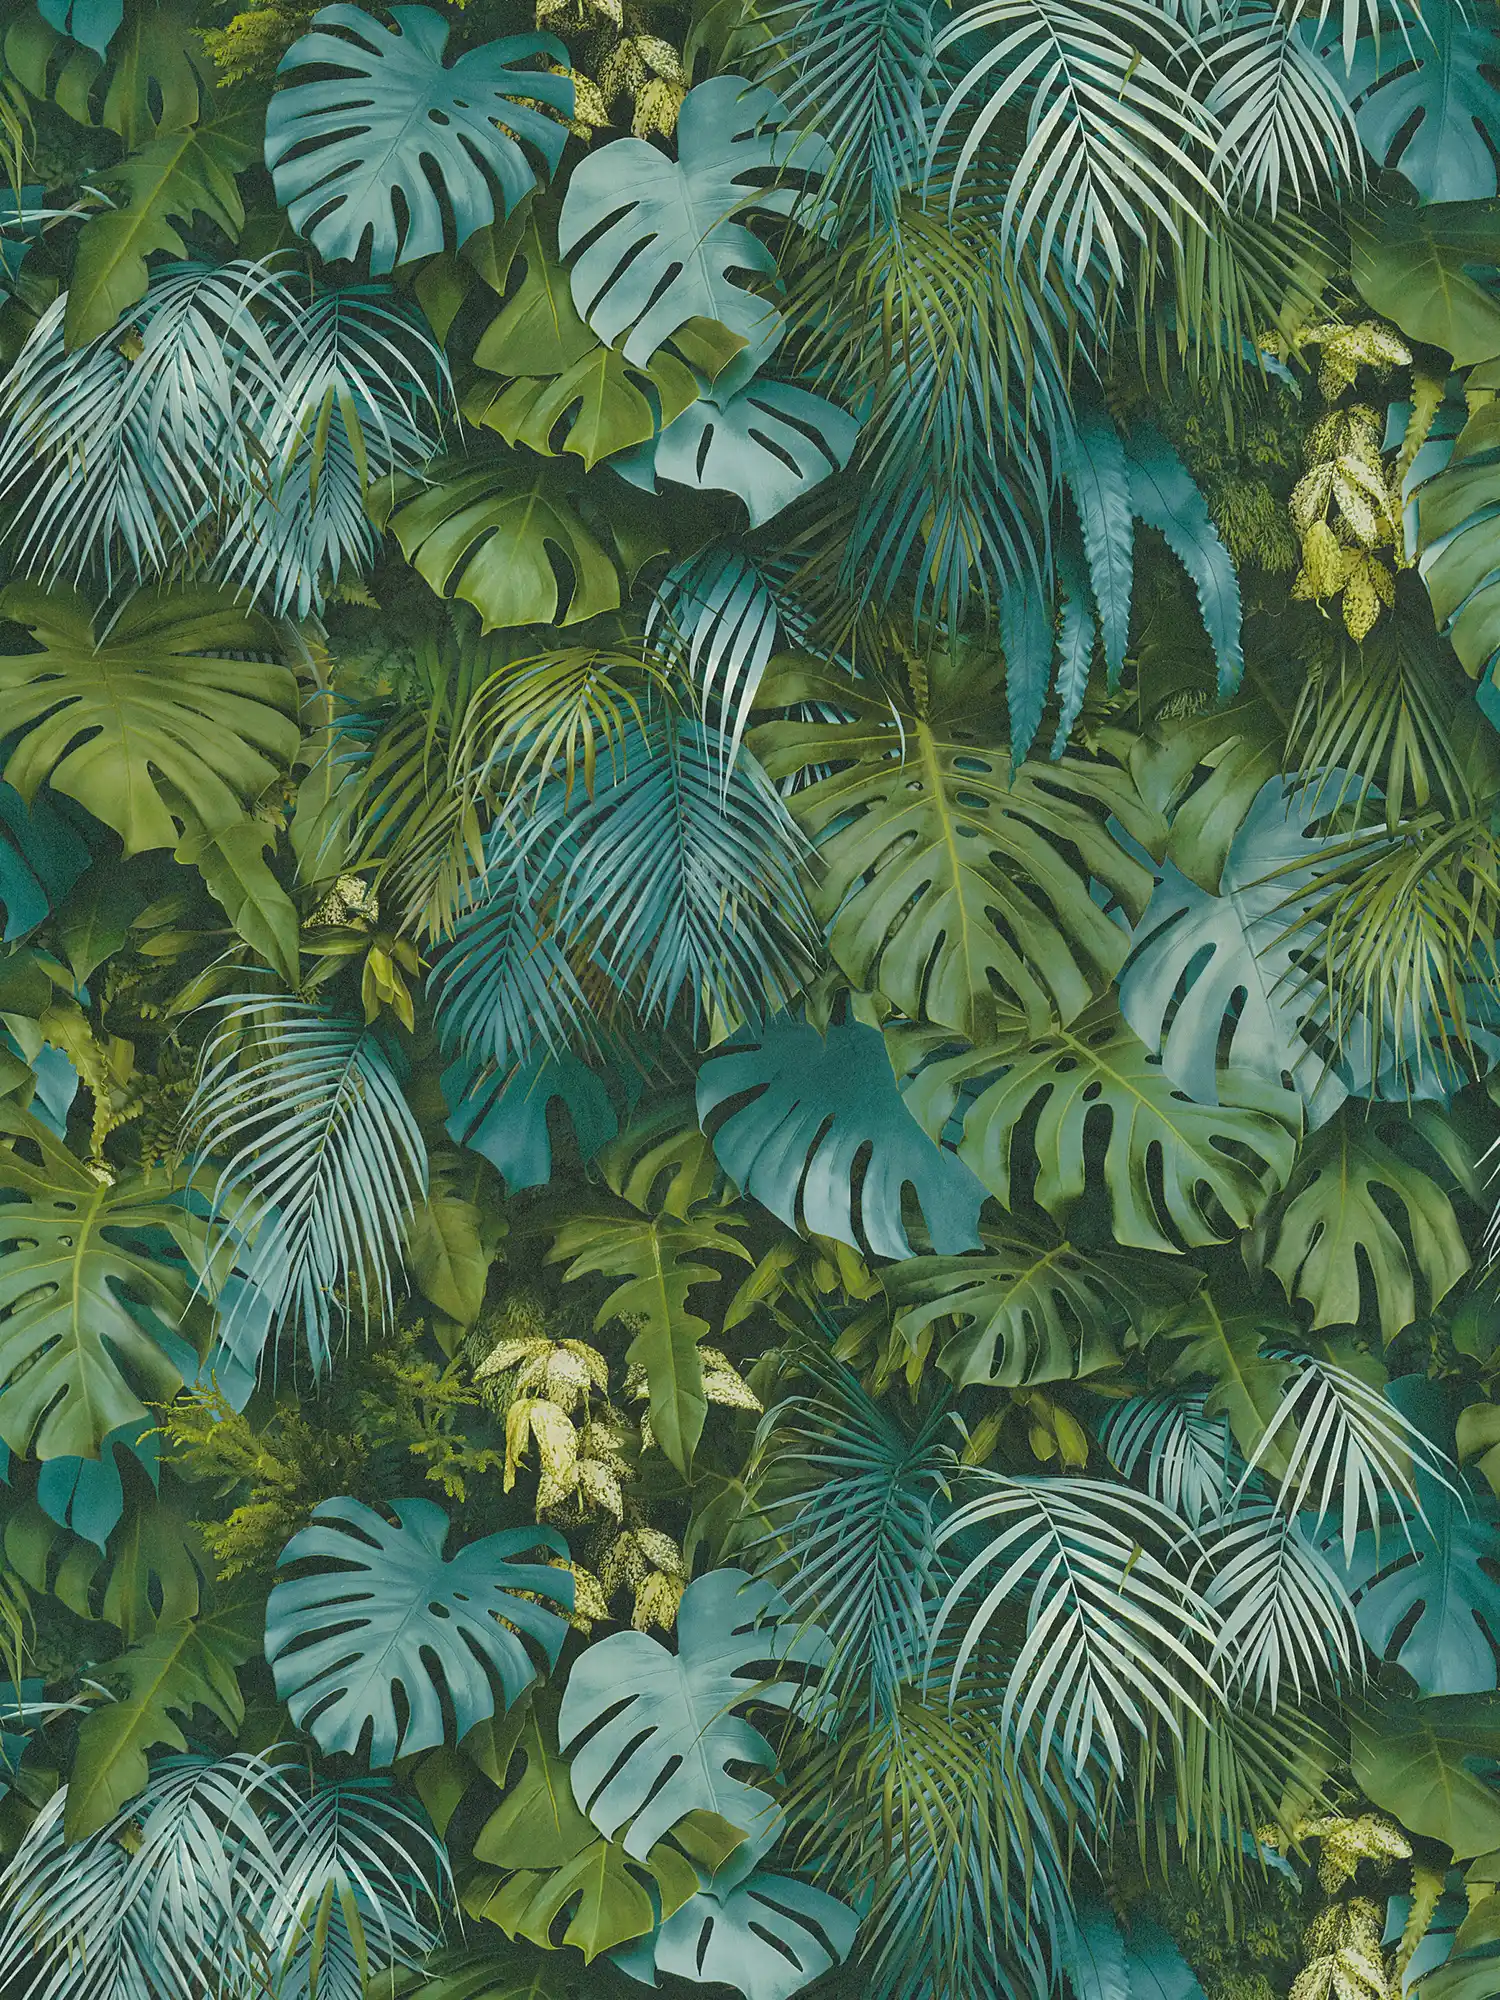 Behang groen blad bos, realistisch, kleuraccenten - groen, blauw
